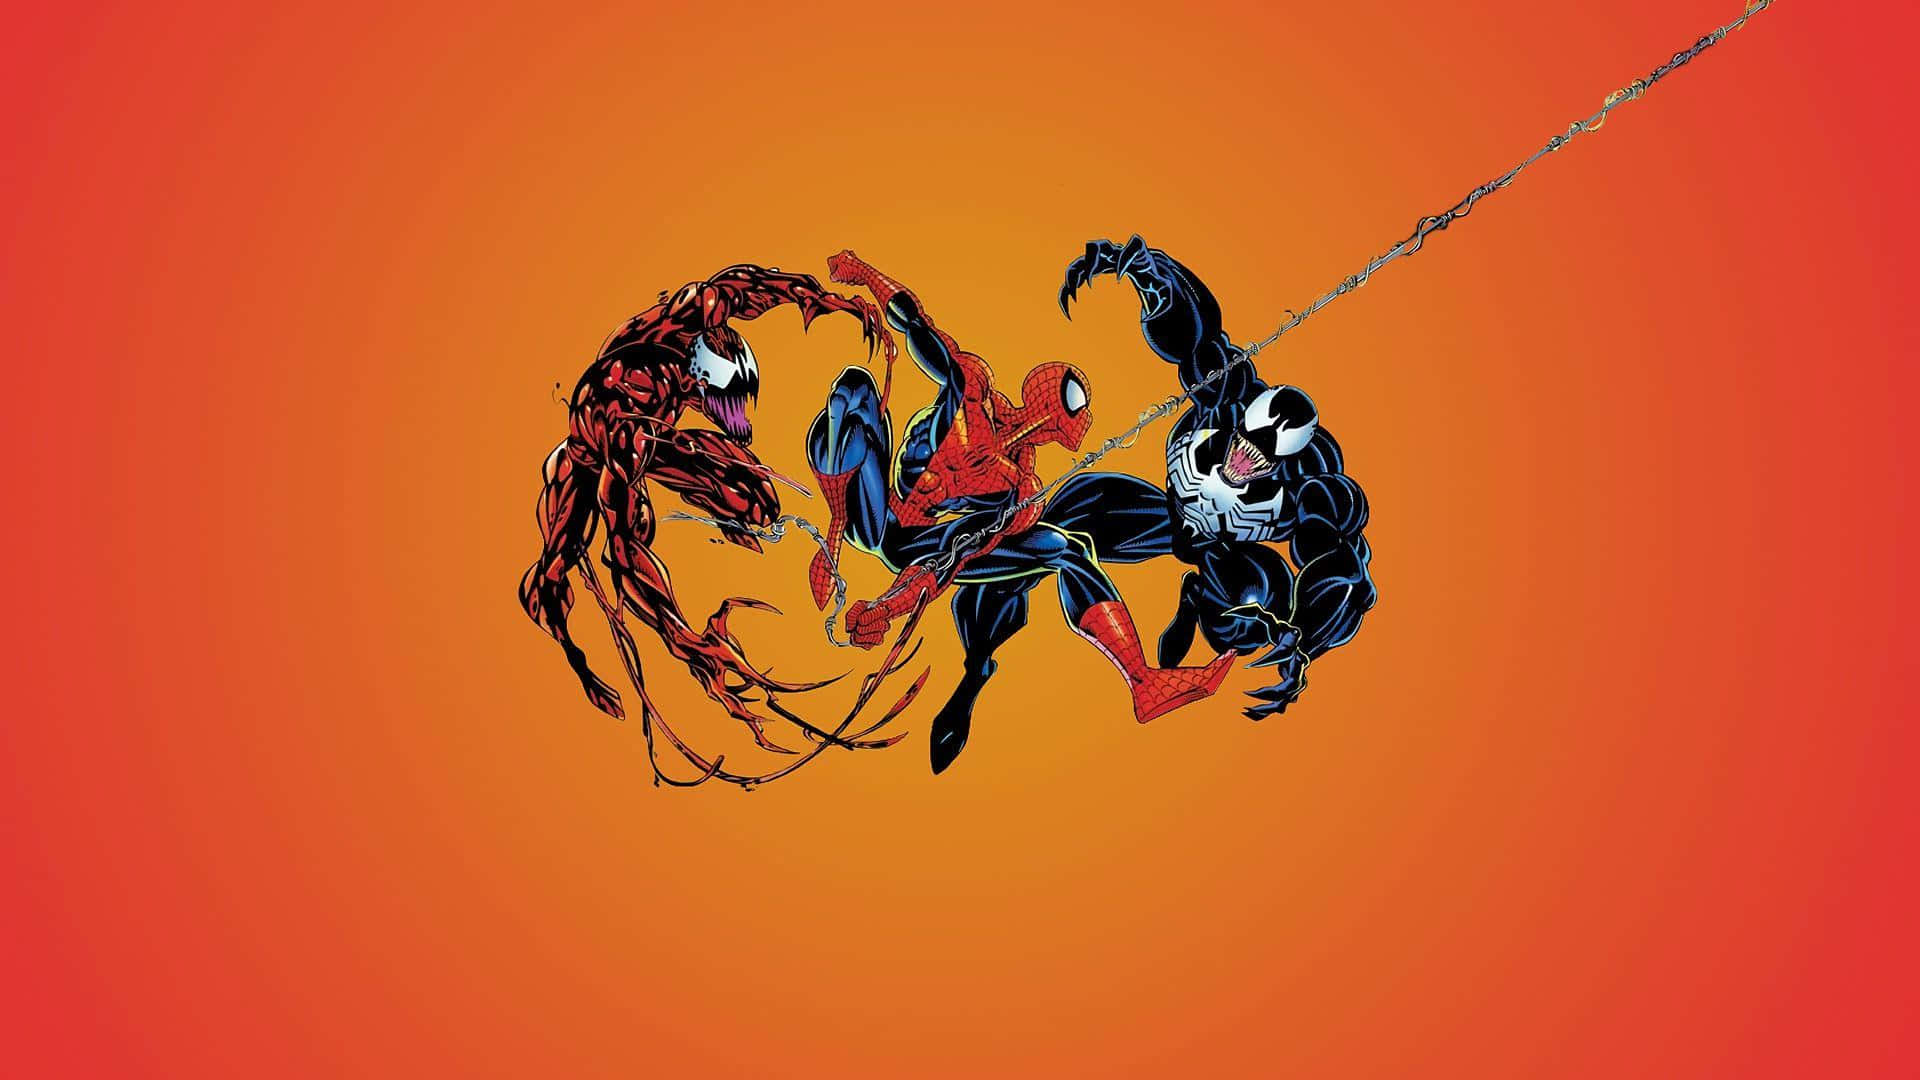 Spider - Man And Venom On An Orange Background Wallpaper